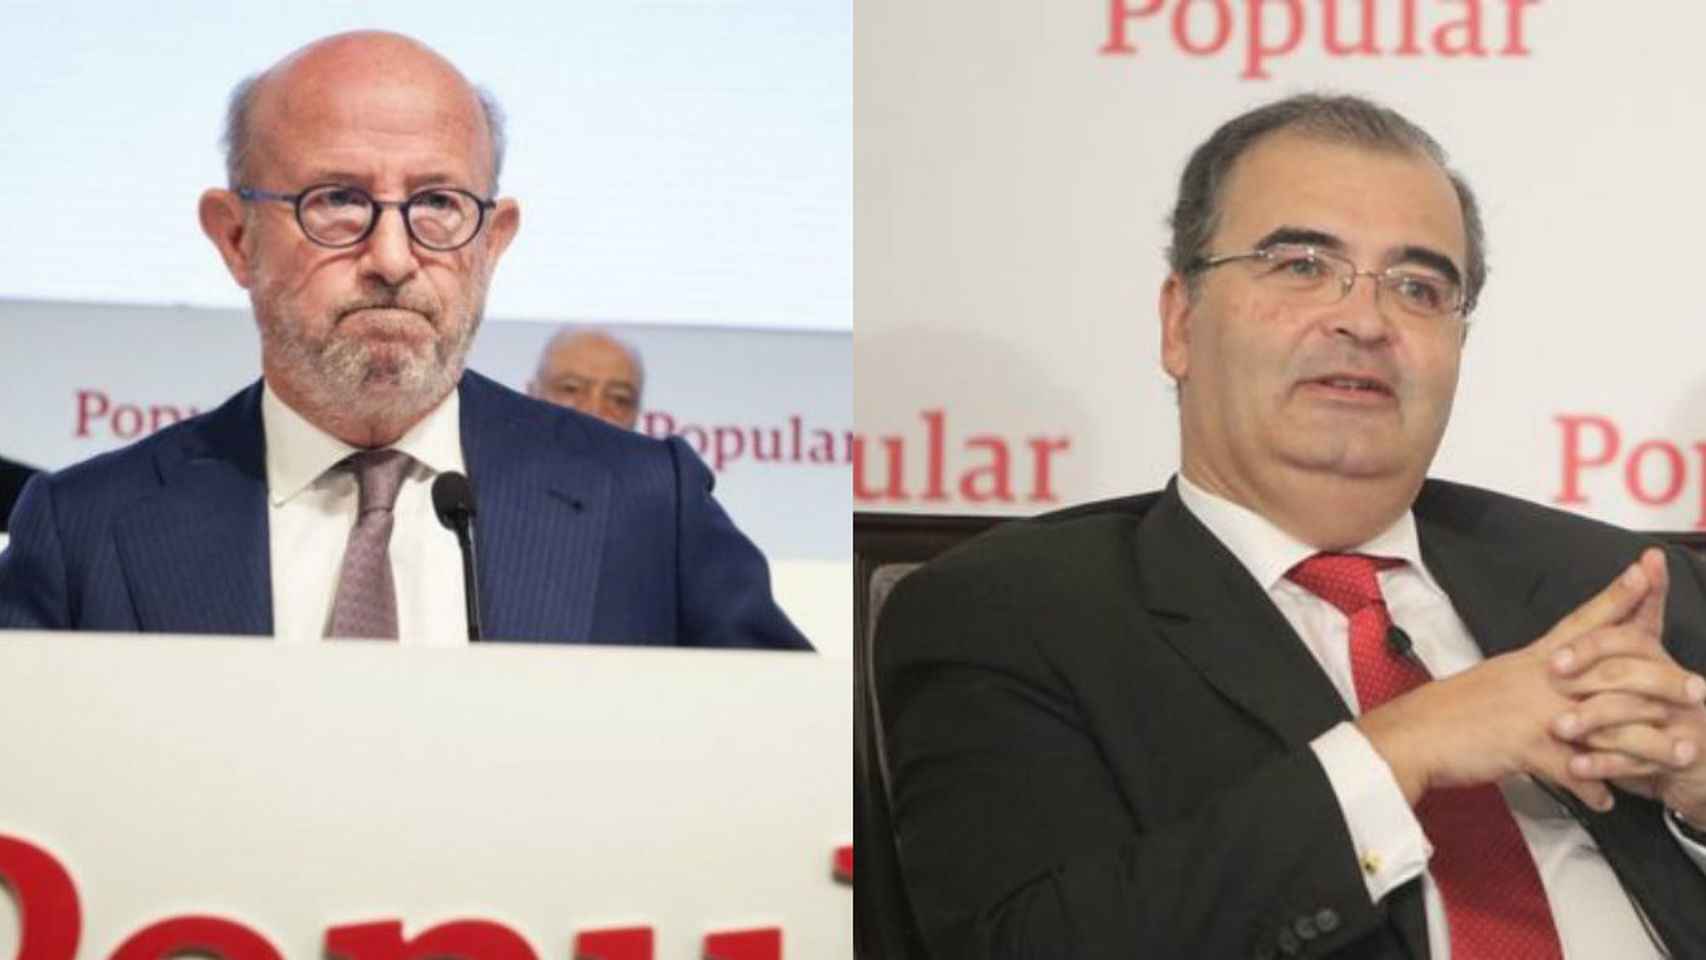 Los expresidentes de Popular, Emilio Saracho y Ángel Ron.